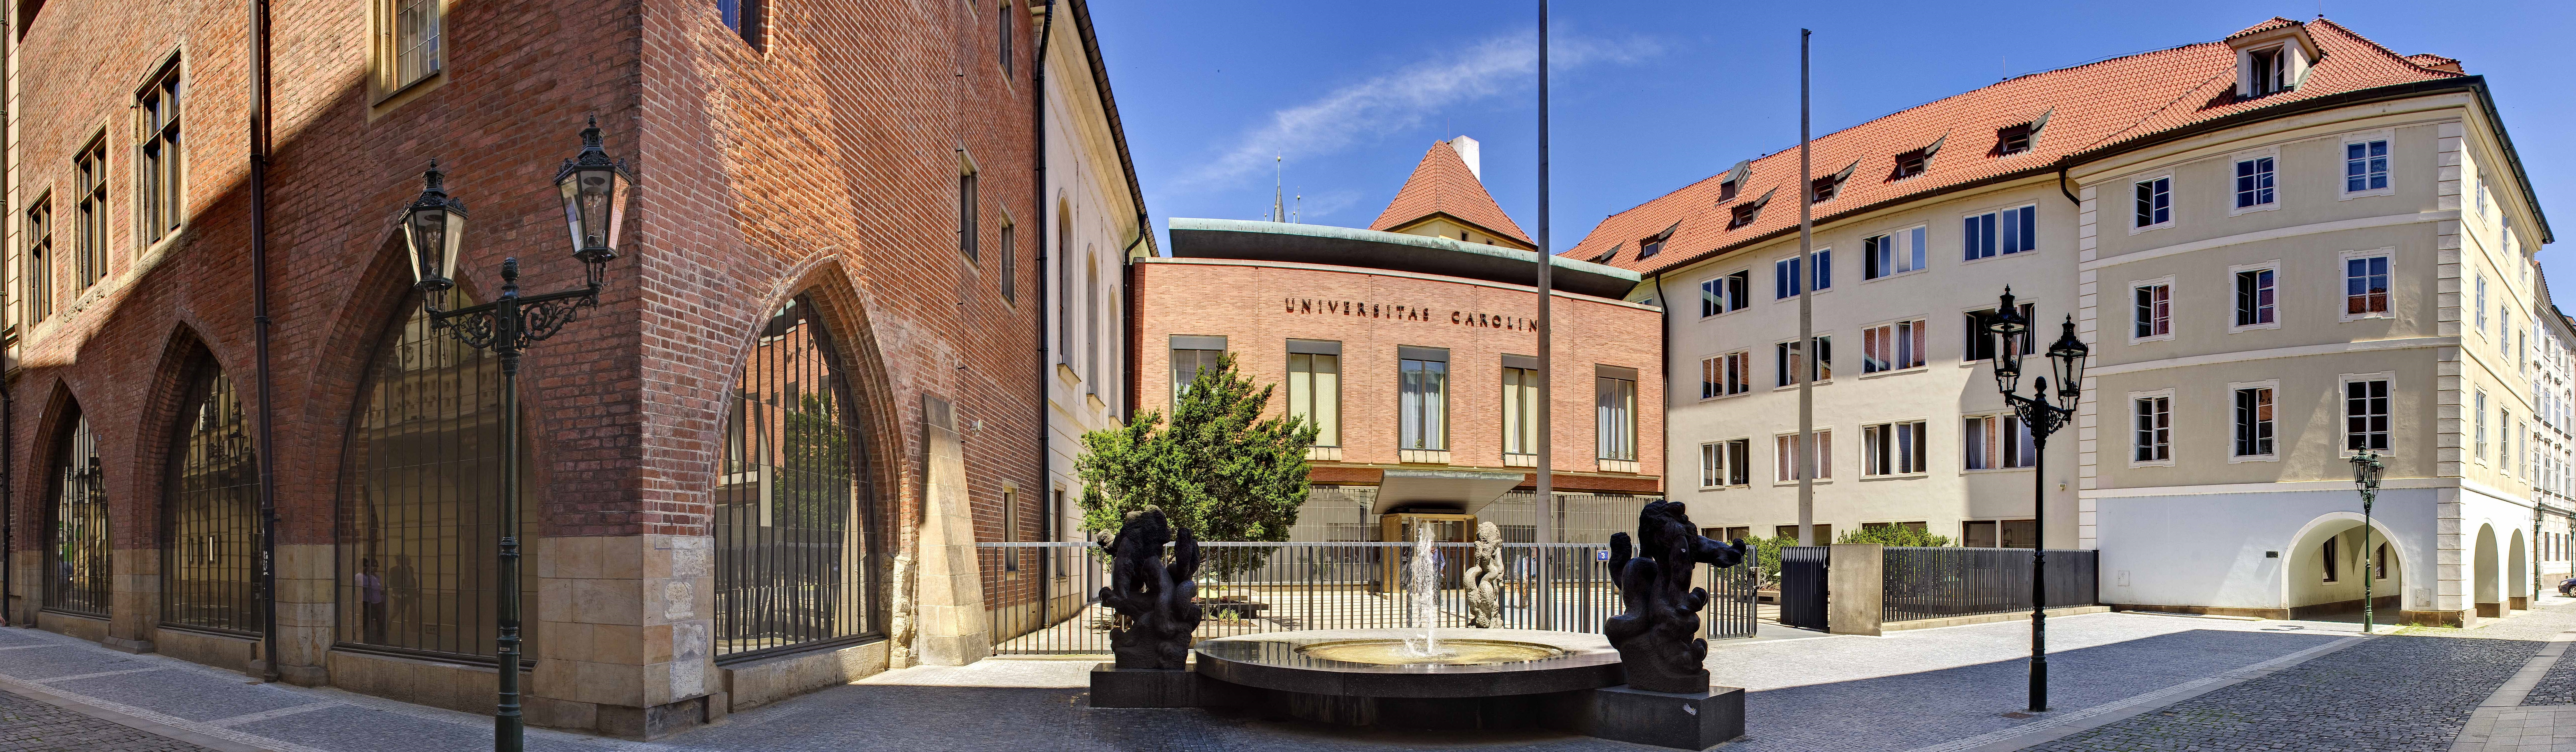 Карлов университет построит новый корпус в центре Праги